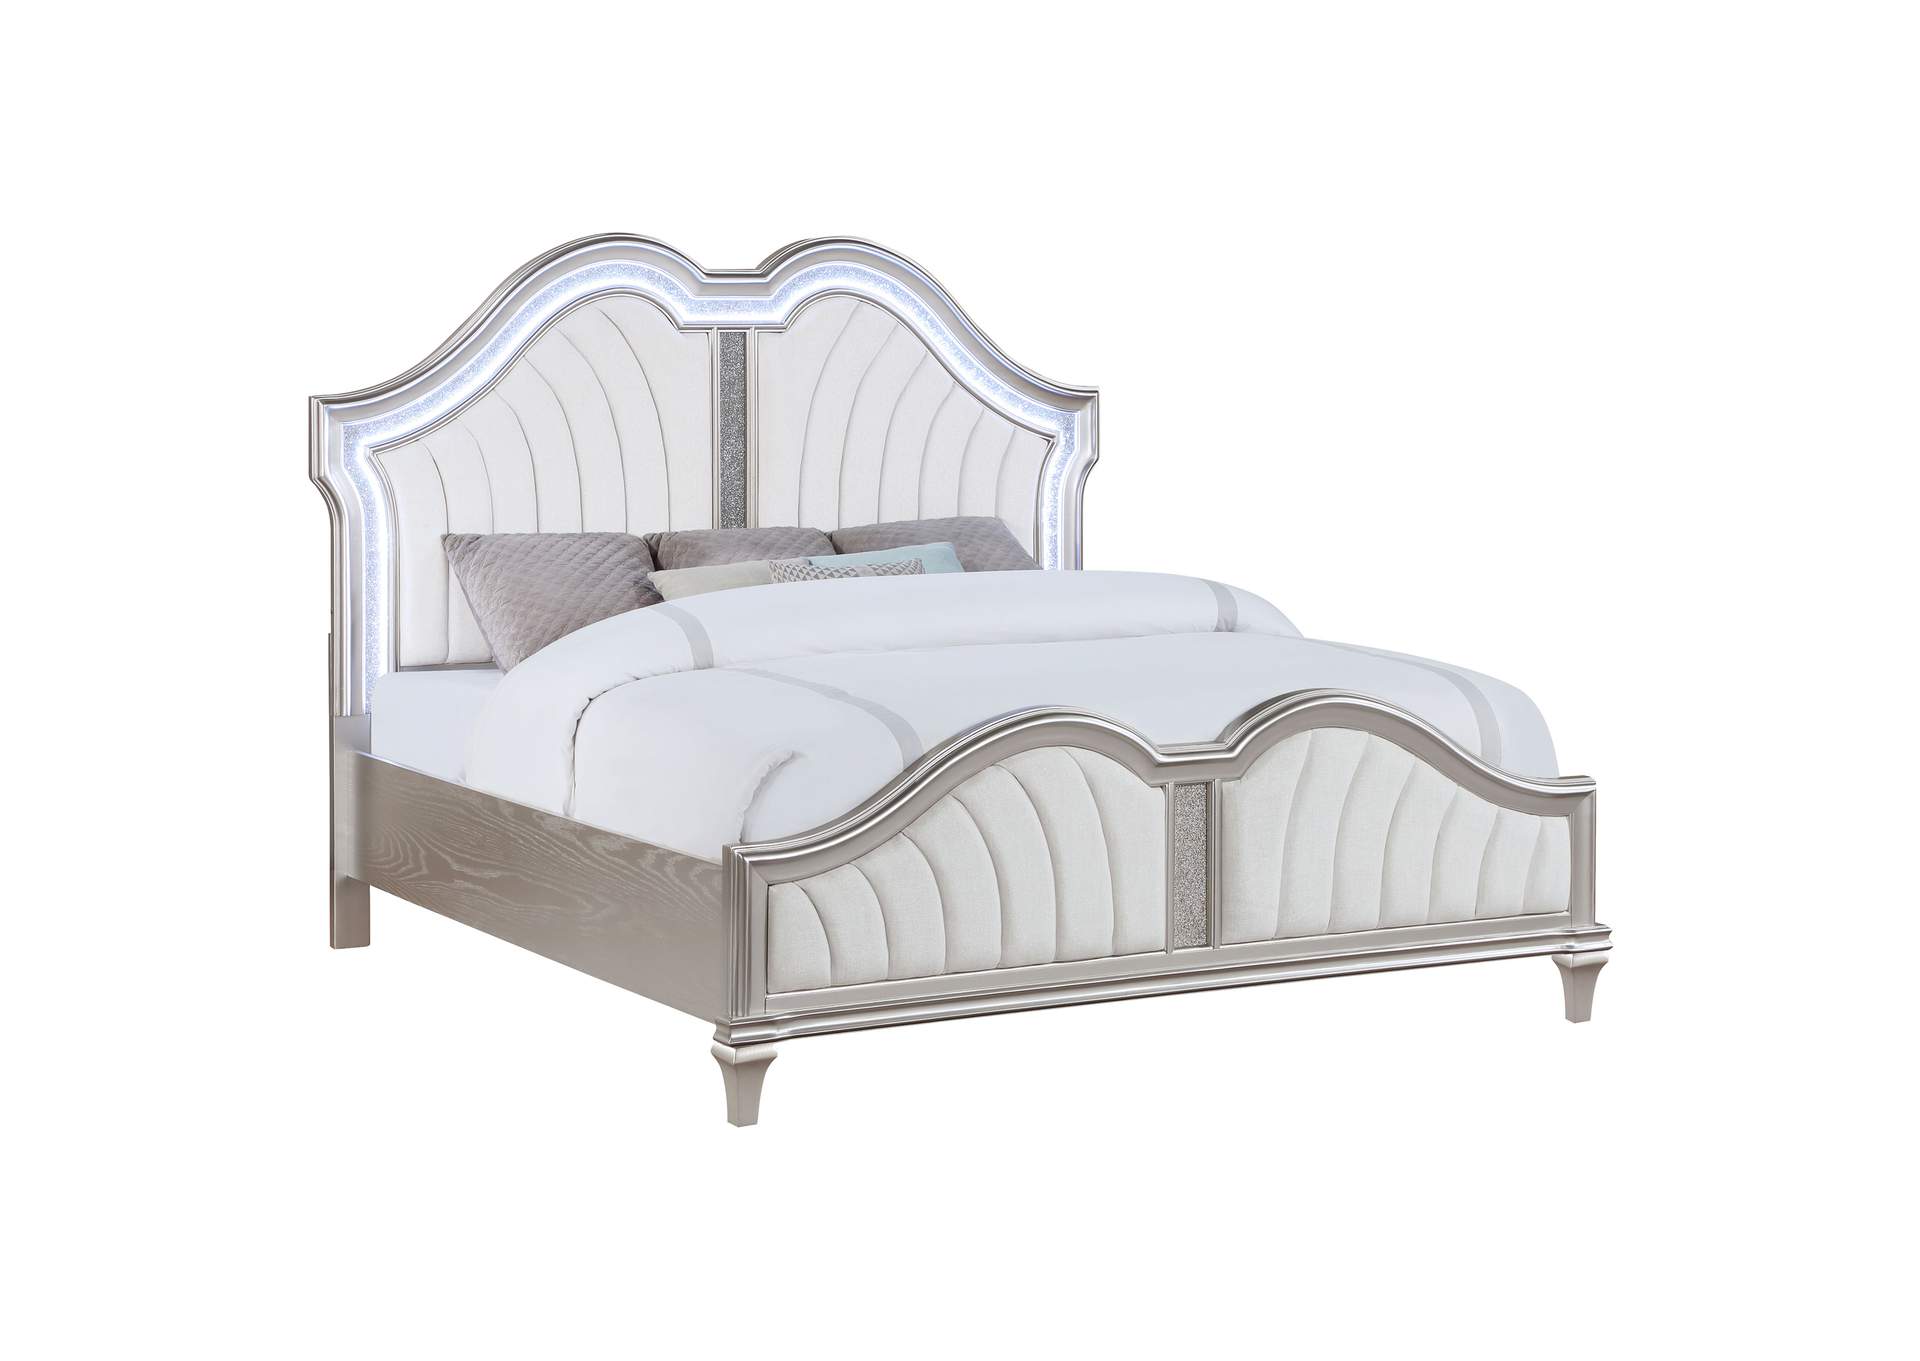 Evangeline Tufted Upholstered Platform California King Bed Ivory and Silver Oak,Coaster Furniture